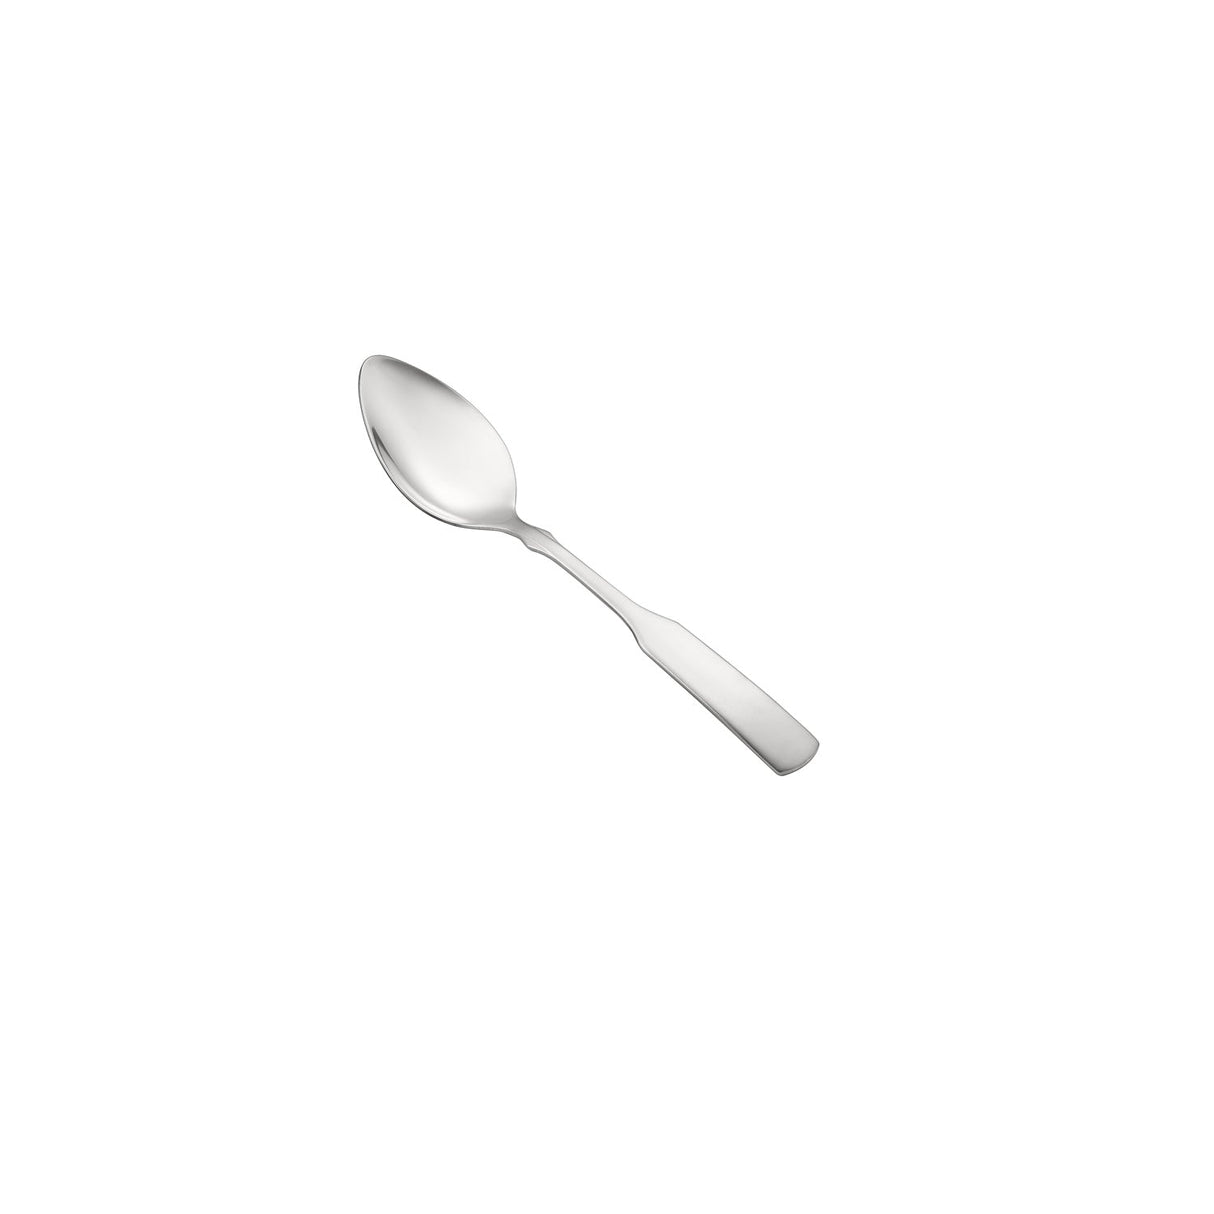 Seine Dinner Spoon 18/0 HW 7 1/4"